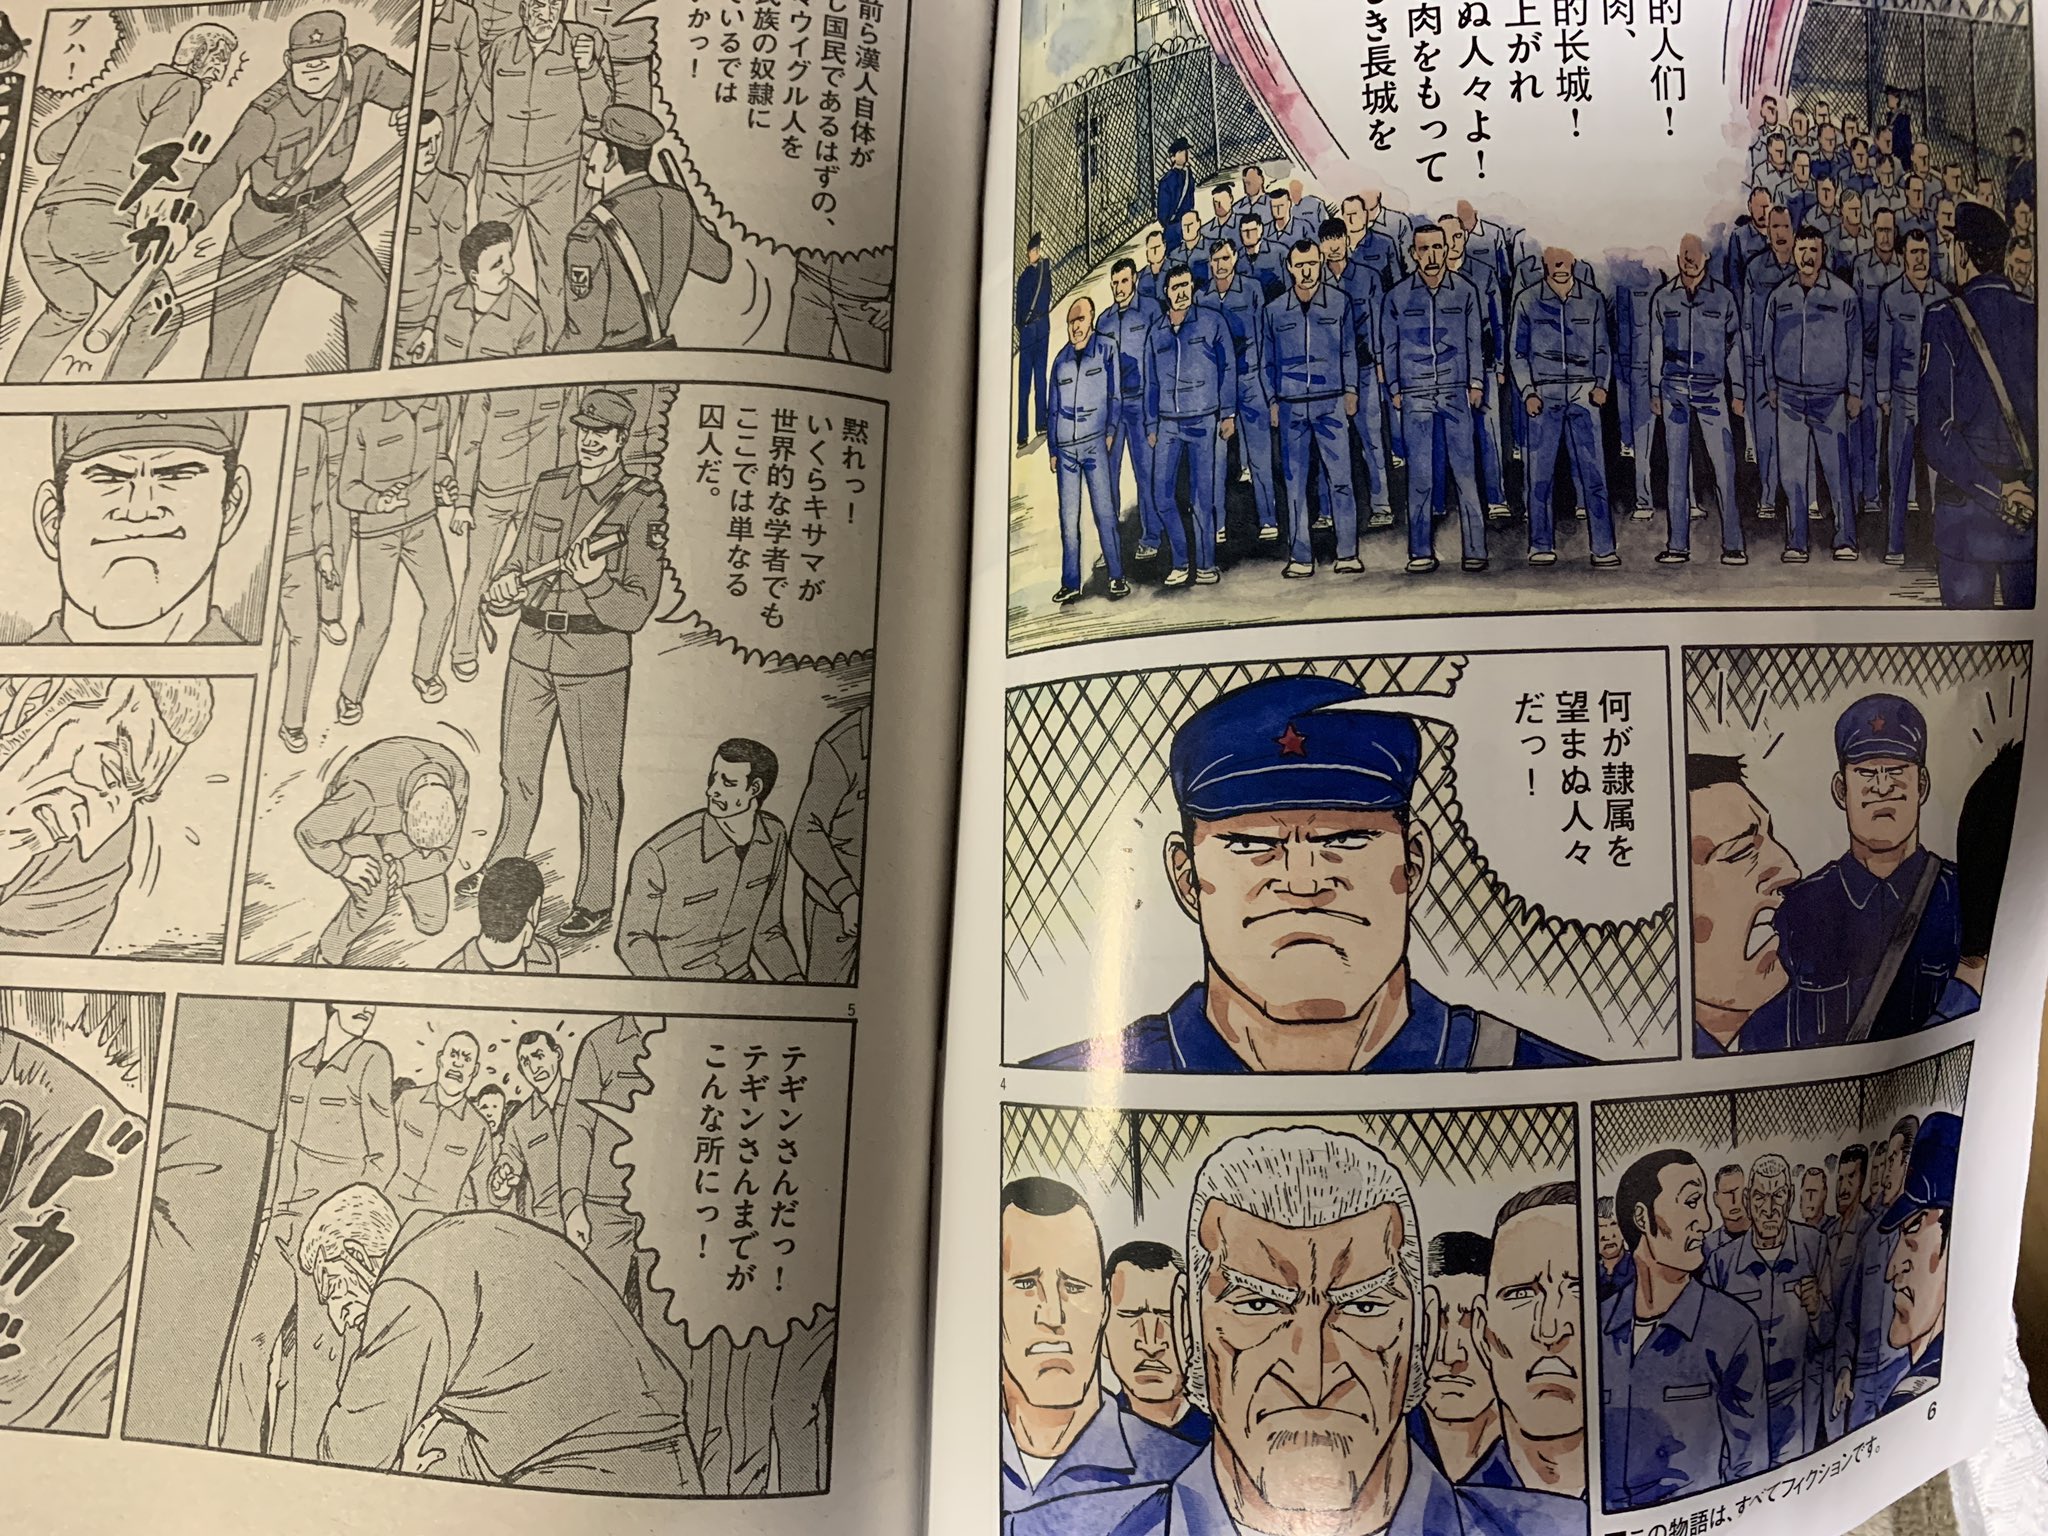 日本のミカタ 今月号のビッグコミック の ゴルゴ13 はウイグル人の強制収容所の事が描かれている T Co I5eg3xsqt6 Twitter